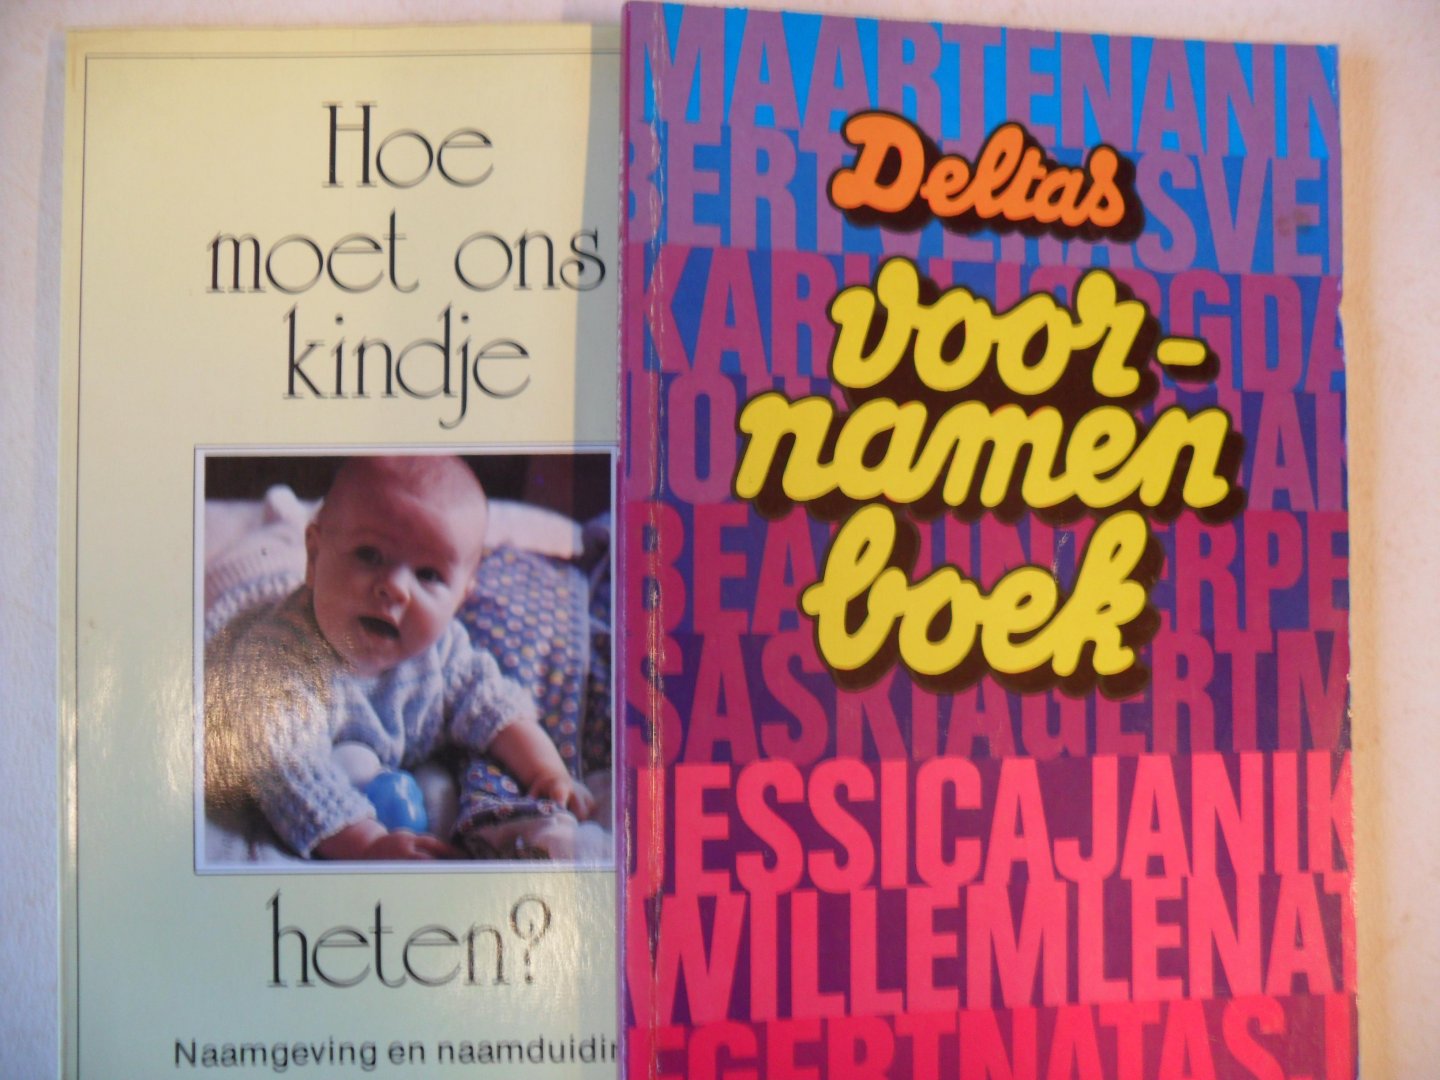 Gelder, W. van - Deltas voornamenboek + Hoe moet ons kindje heten?